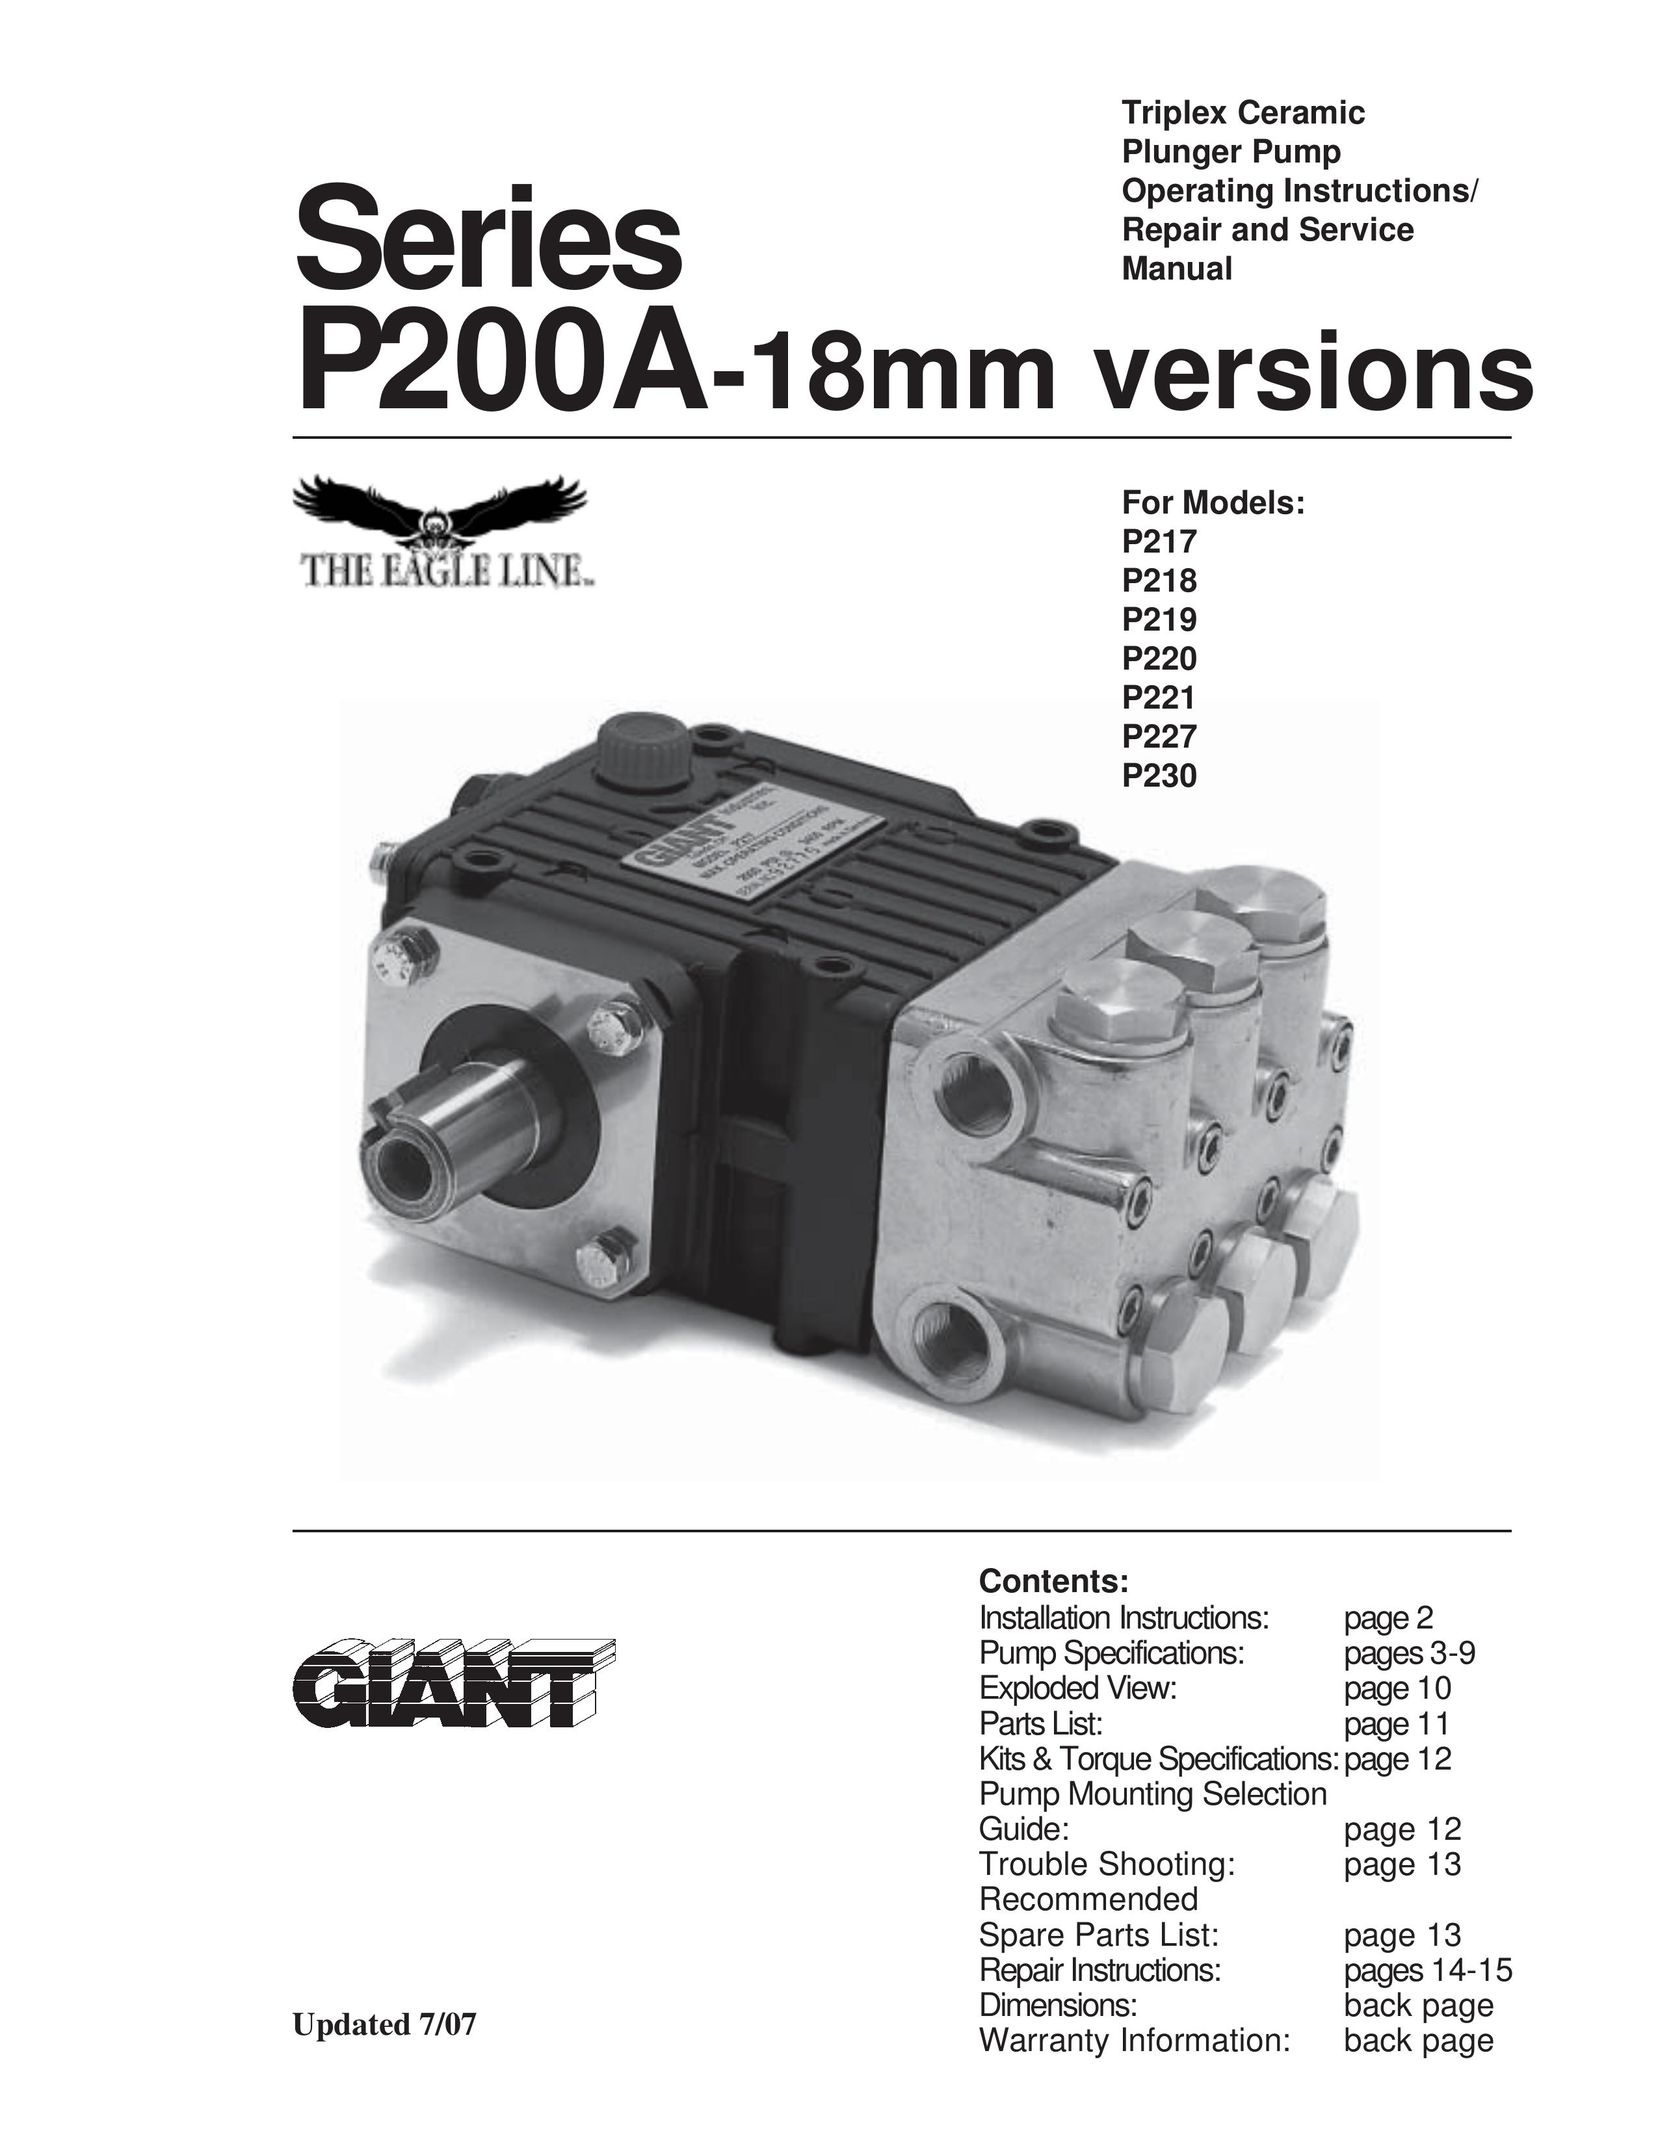 Giant P218 Water Pump User Manual